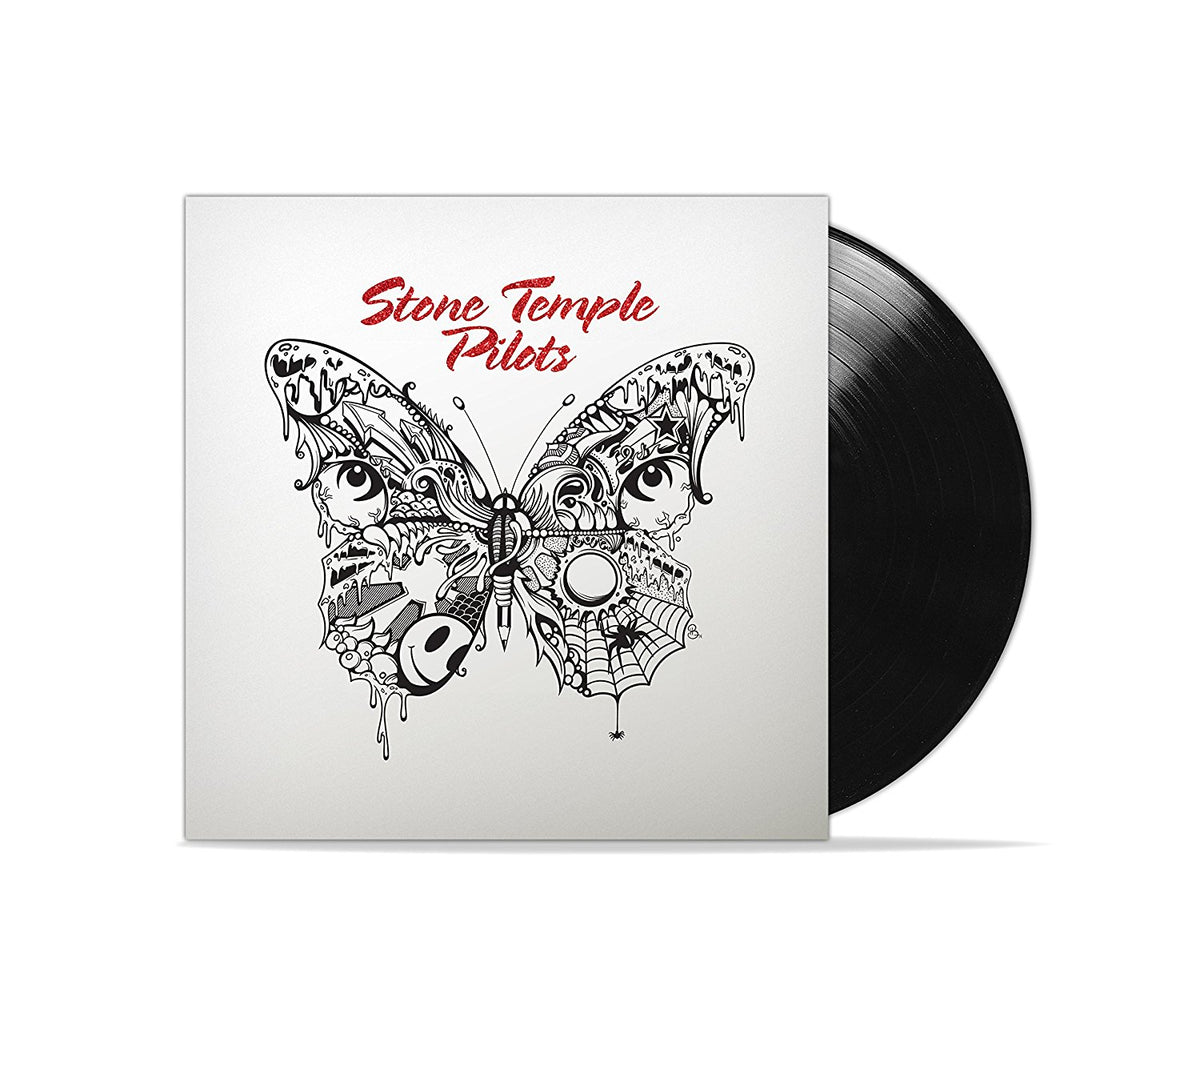 Stone Temple Pilots - Stone Temple Pilots - Vinyl